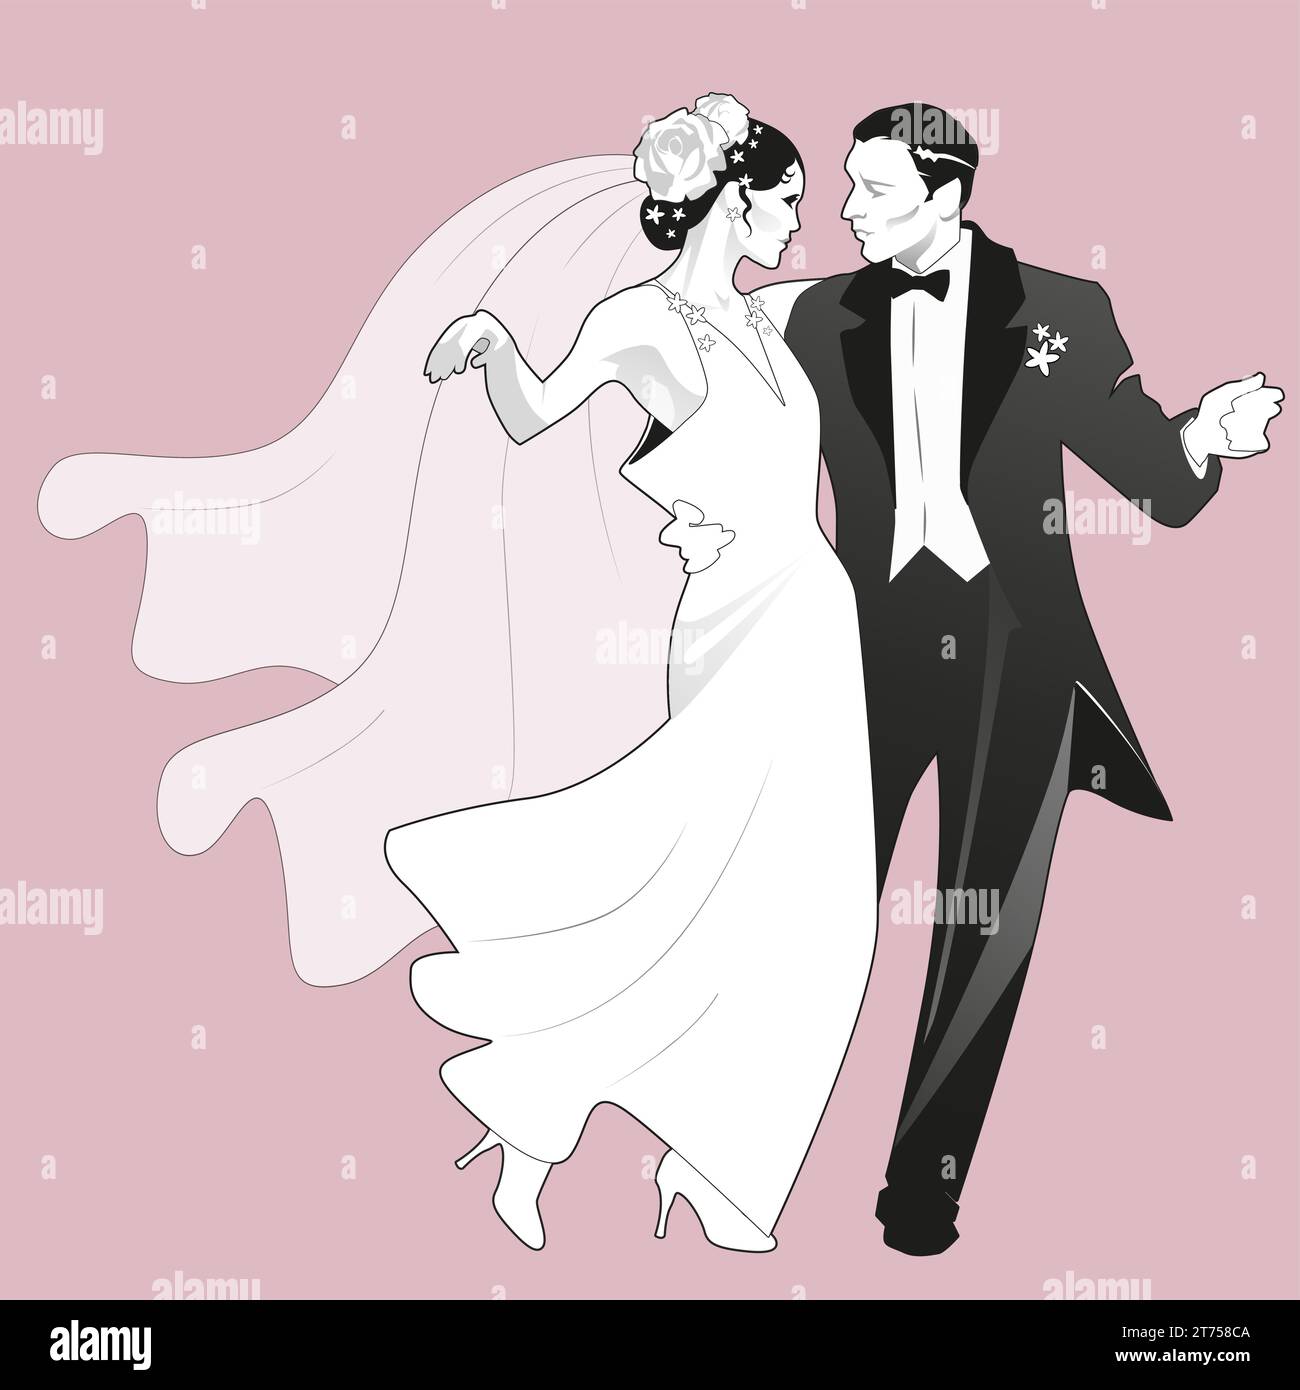 Elegante coppia di nozze che danzano in stile retrò. Sposa che indossa un abito lungo e velo sulla testa, sposo che indossa un cappotto. Illustrazione Vettoriale